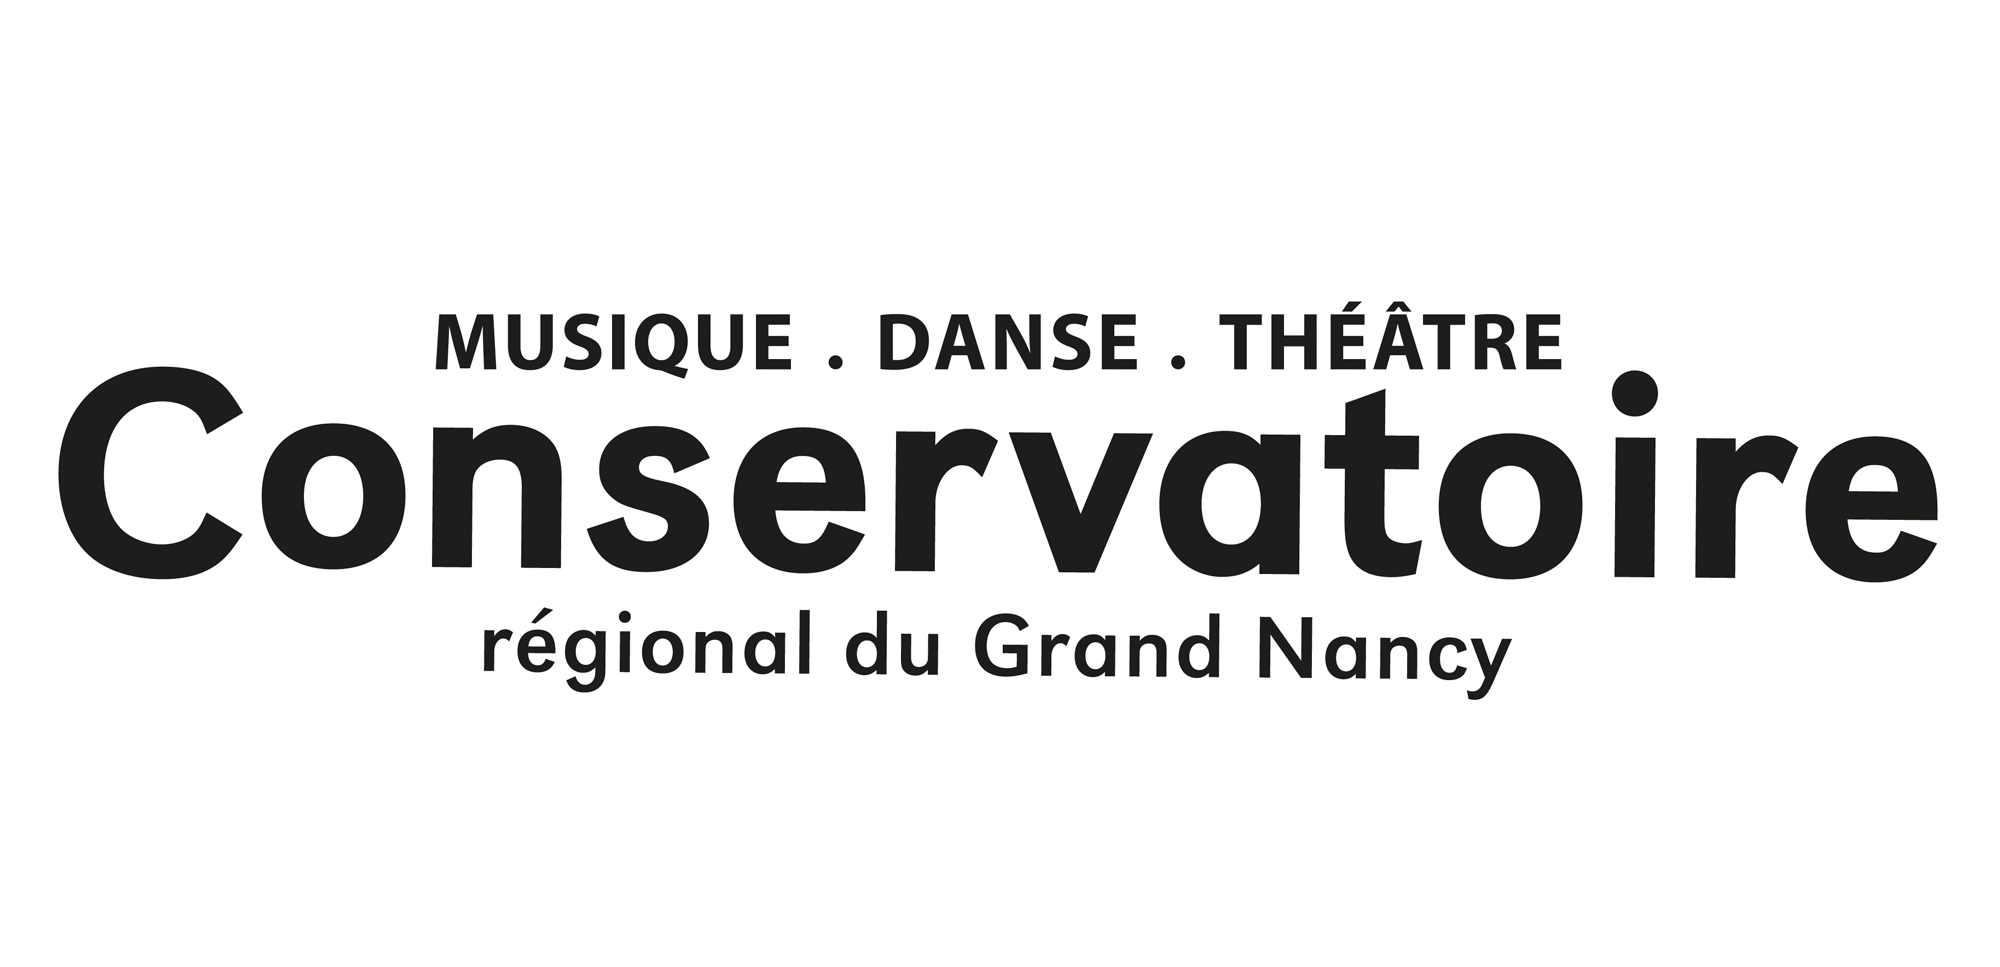 Conservatoire Régional du Grand Nancy - Musique, Danse, Théâtre